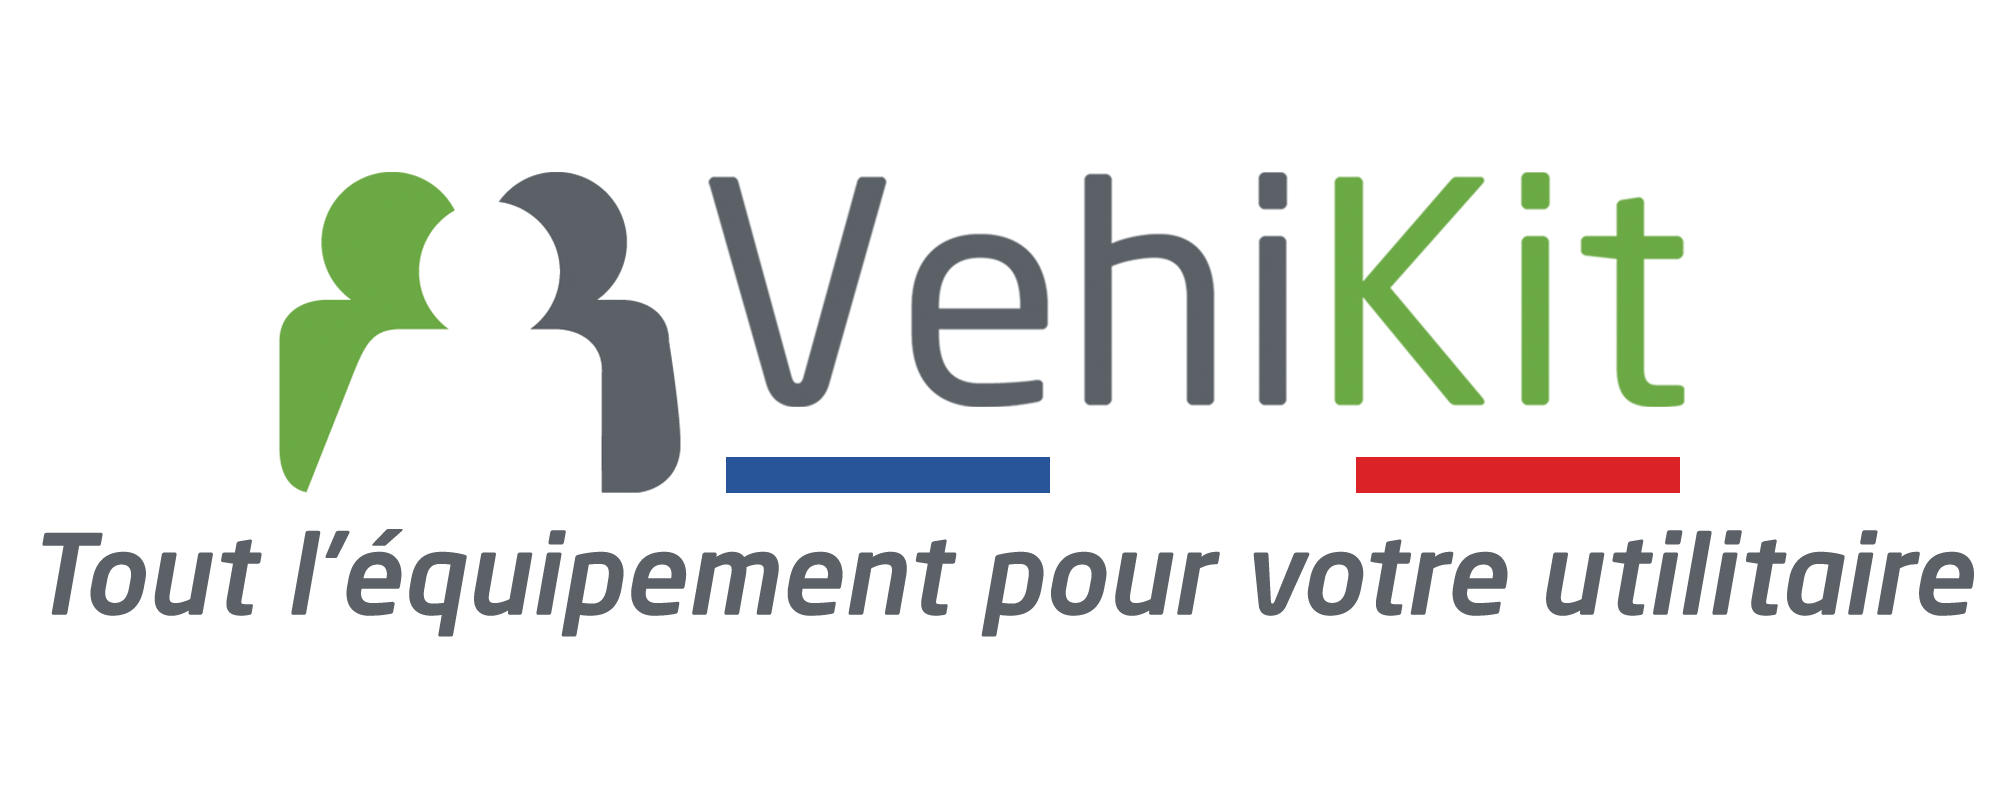 Vehikit-logo-v10K2rPjEchWOXt7